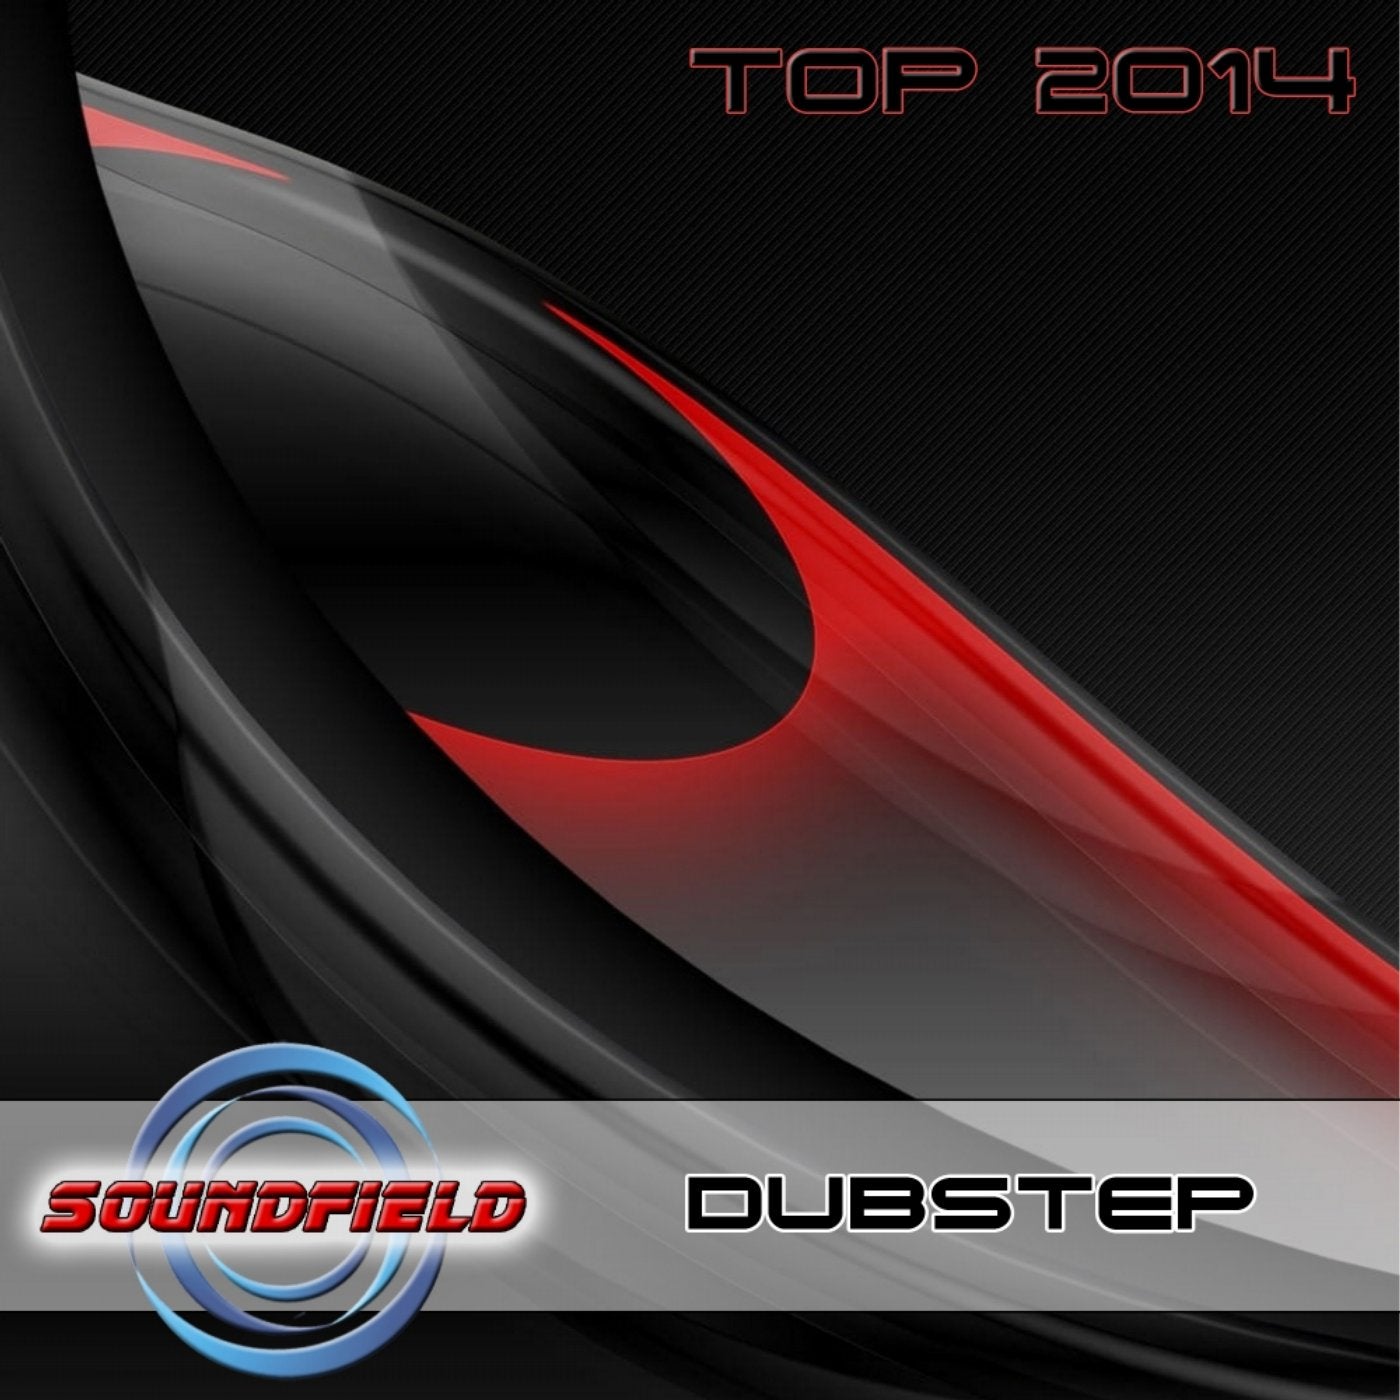 Dubstep Top 2014